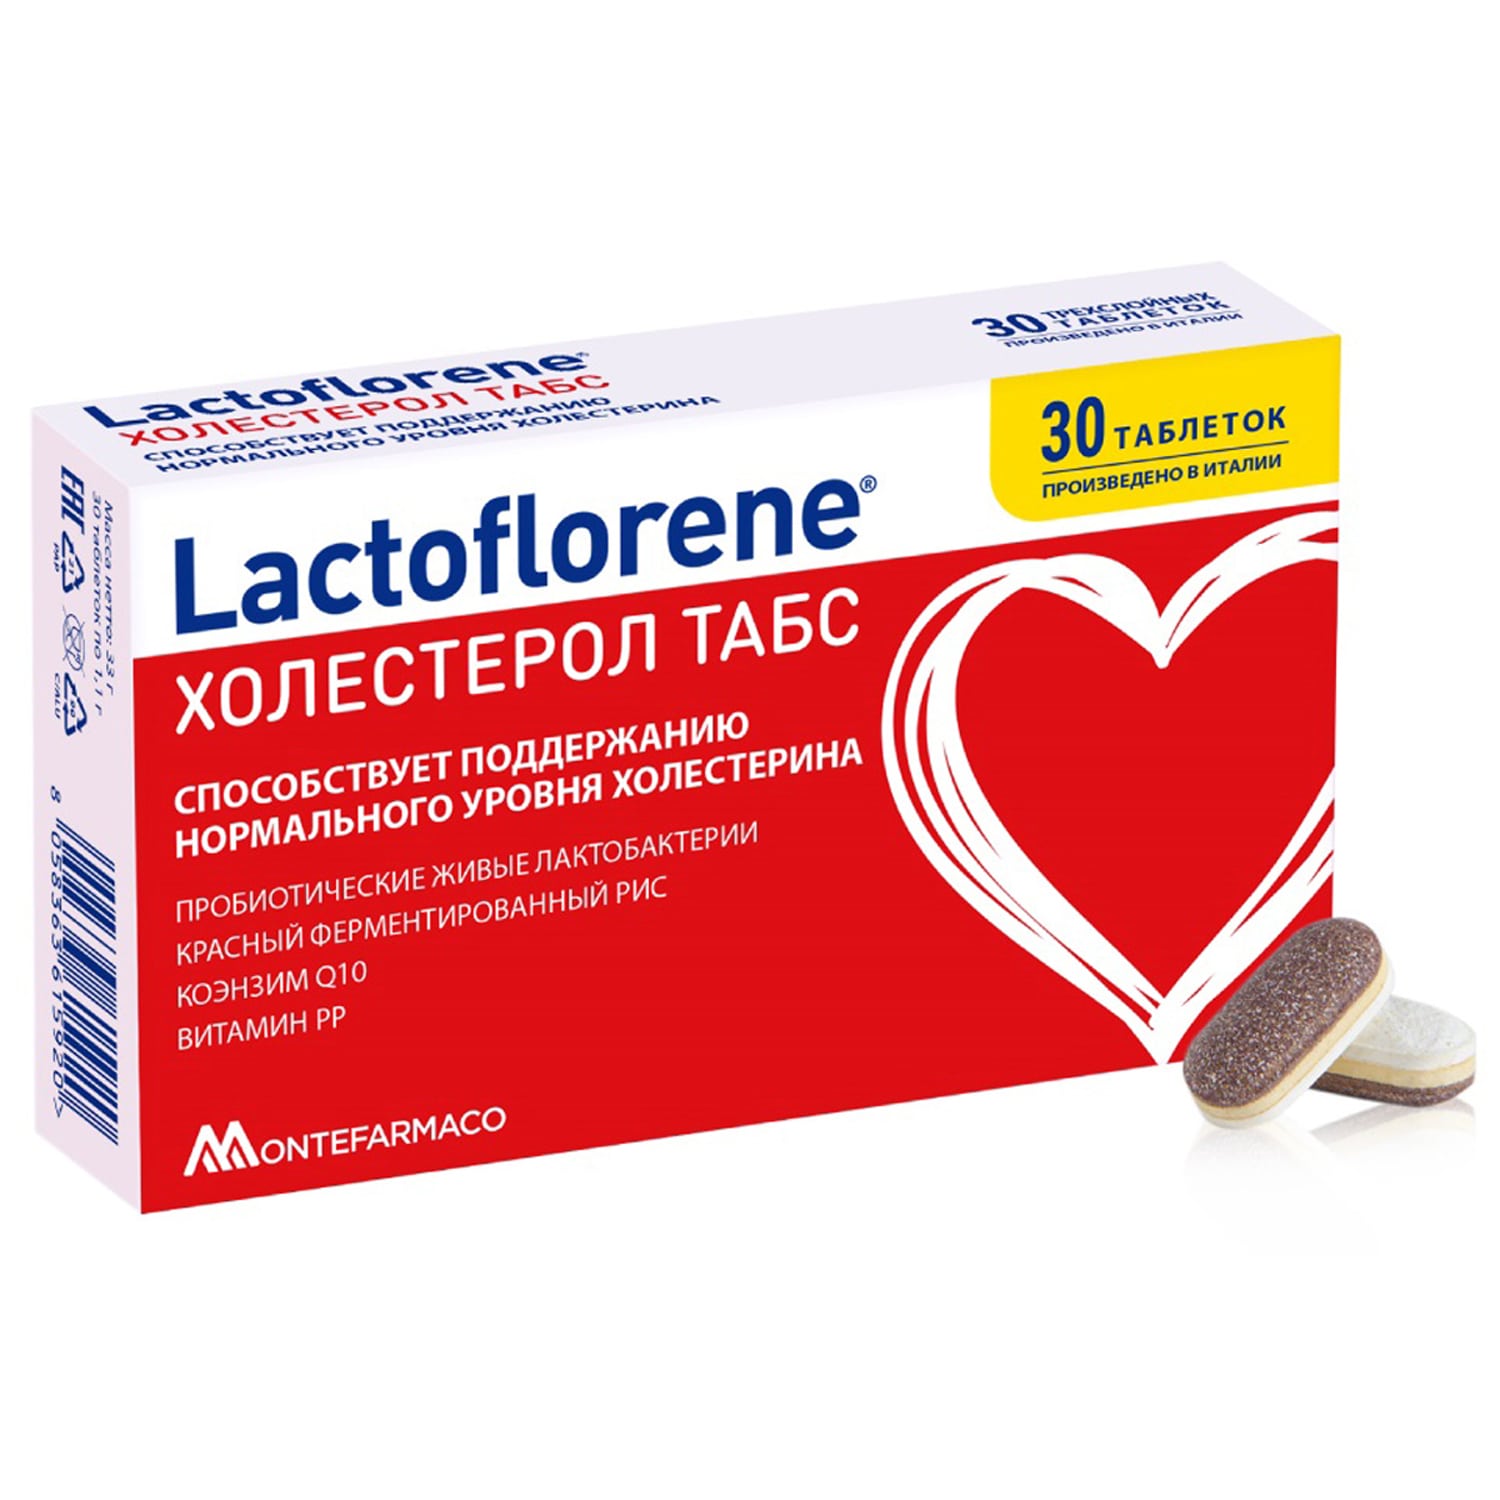 lactoflorene биологически активная добавка холестерол 20 пакетиков lactoflorene Lactoflorene Пробиотический комплекс «Холестерол табс», 30 таблеток (Lactoflorene, )